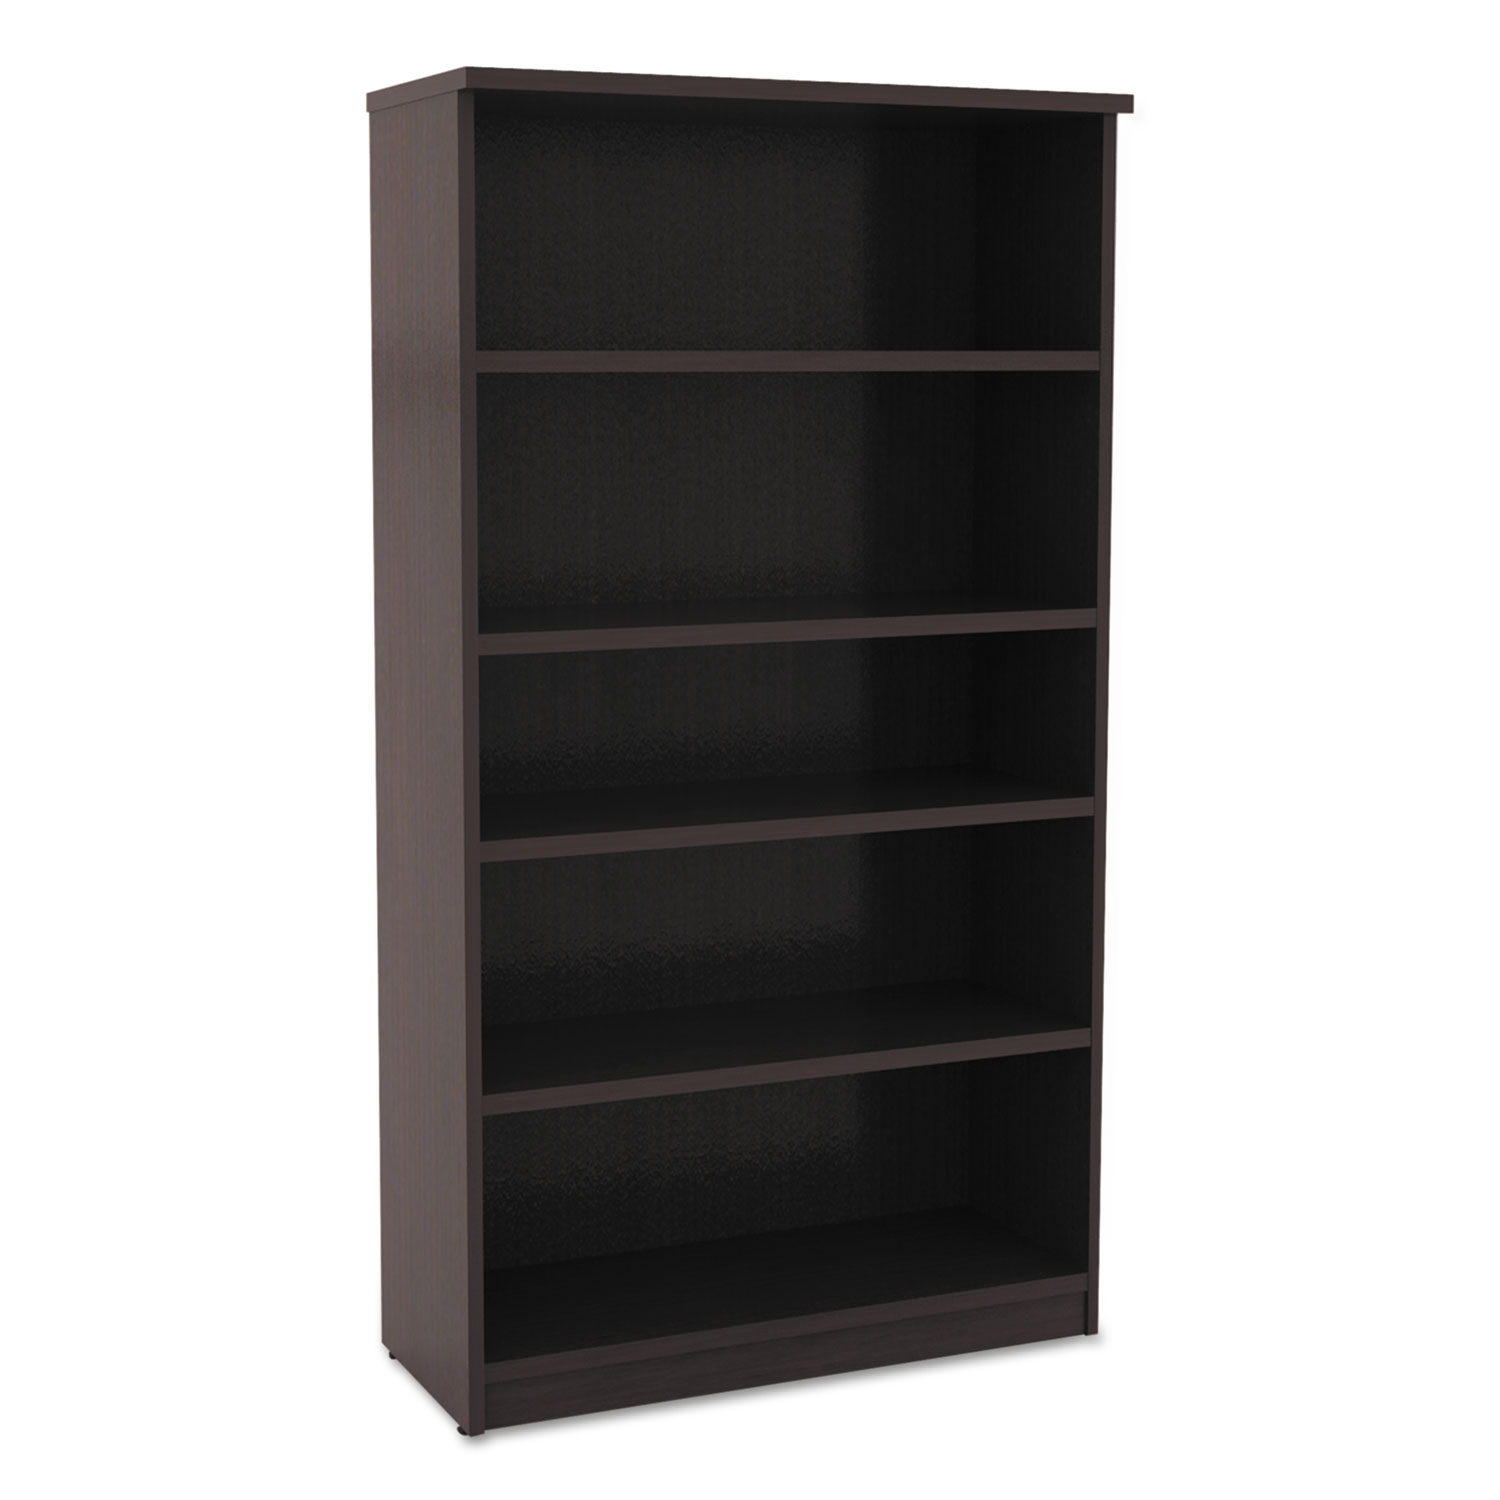 Alera Valencia Series Bookcase, Five-Shelf, 31 3/4w x 14d x 65h, Espresso